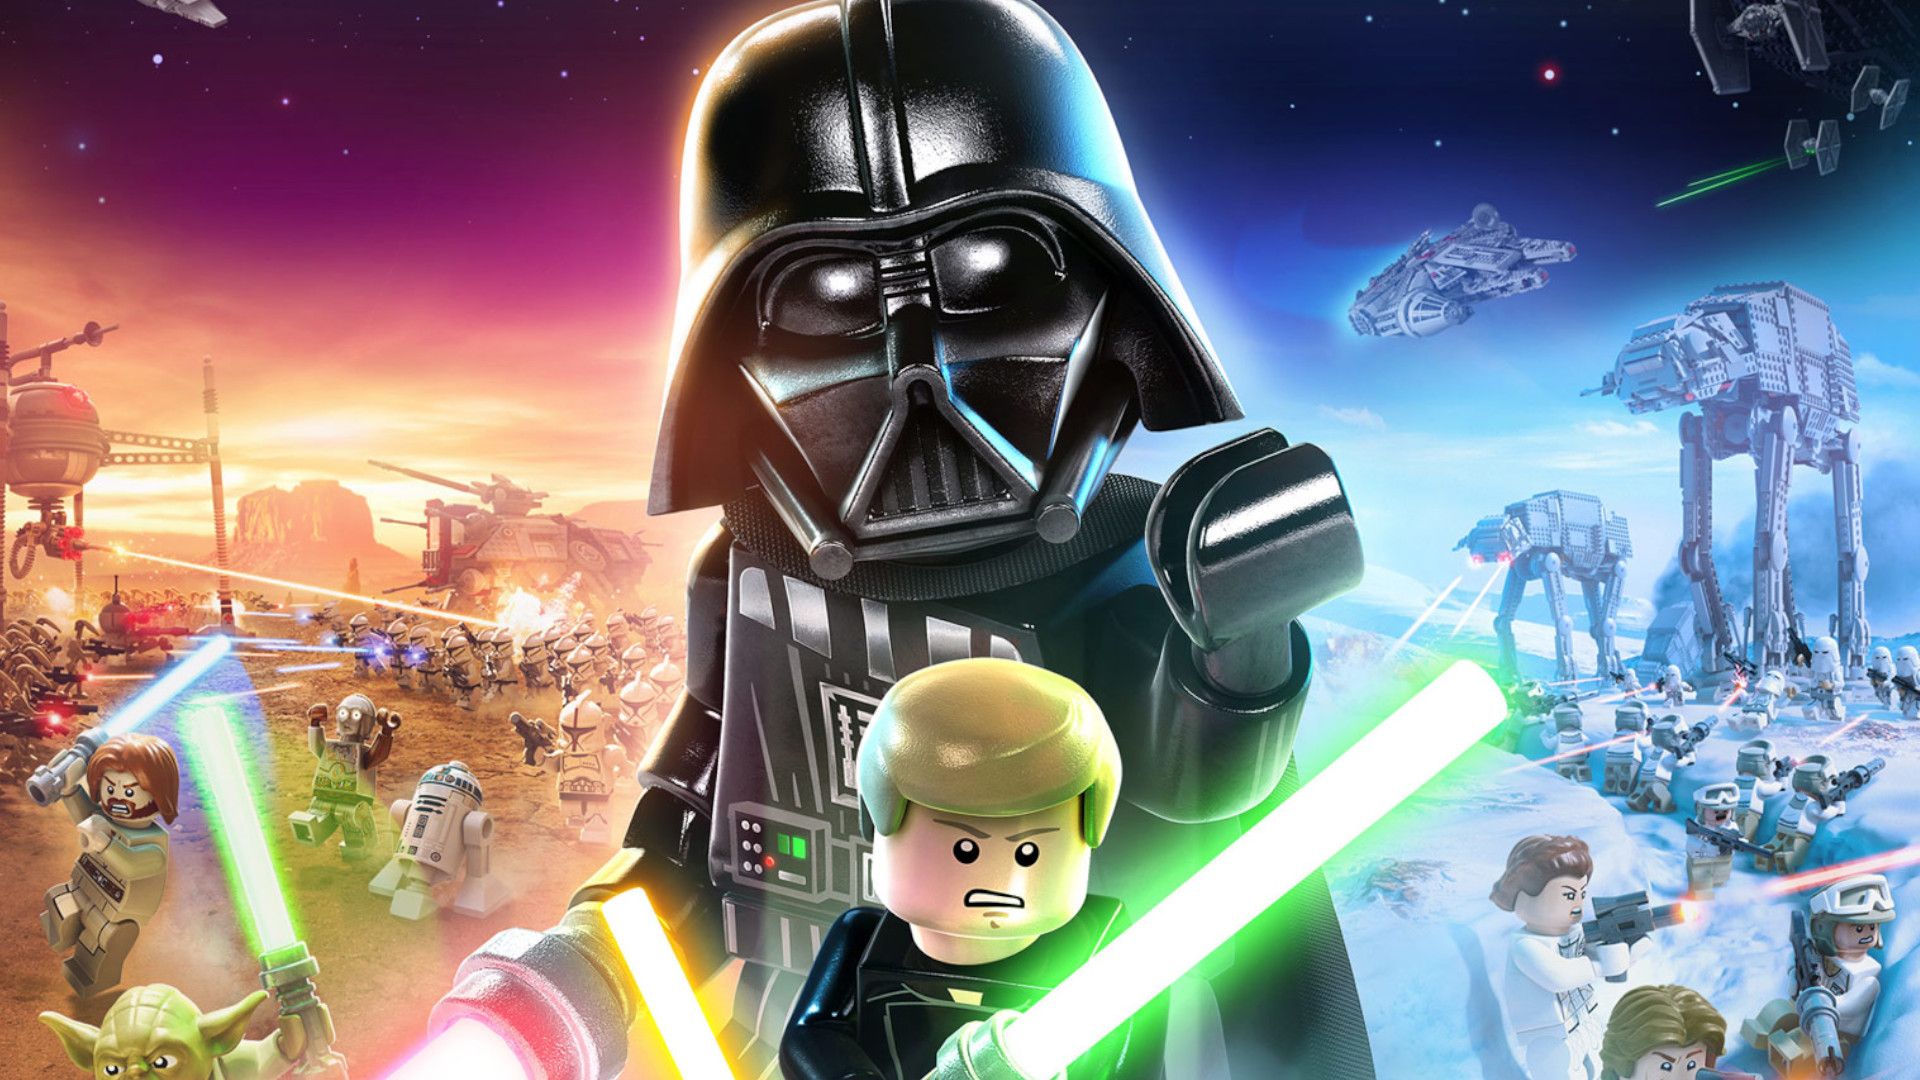 Lego Star Wars: The Skywalker Saga release date set for October